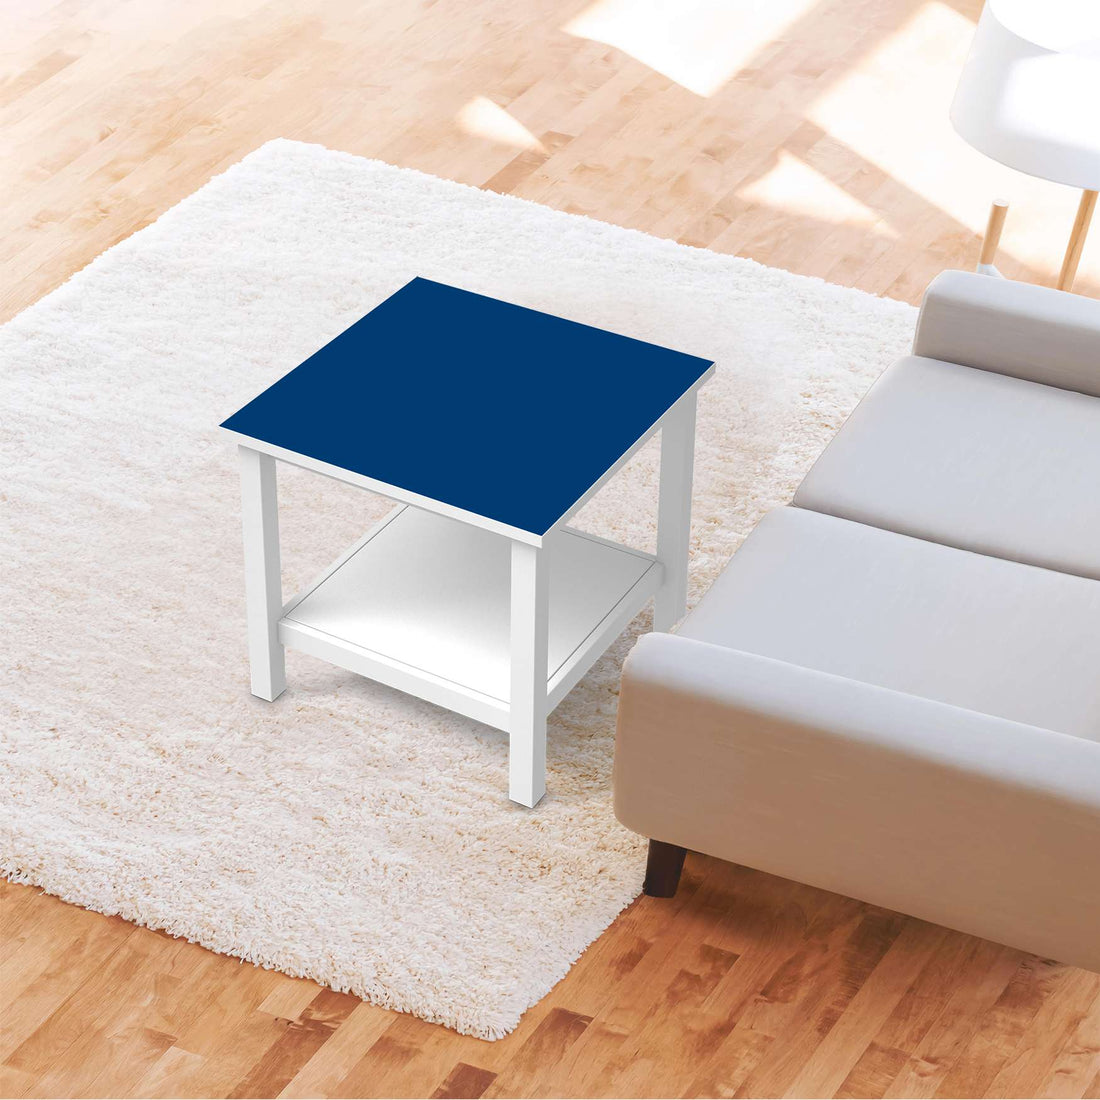 Möbel Klebefolie Blau Dark - IKEA Hemnes Beistelltisch 55x55 cm - Wohnzimmer